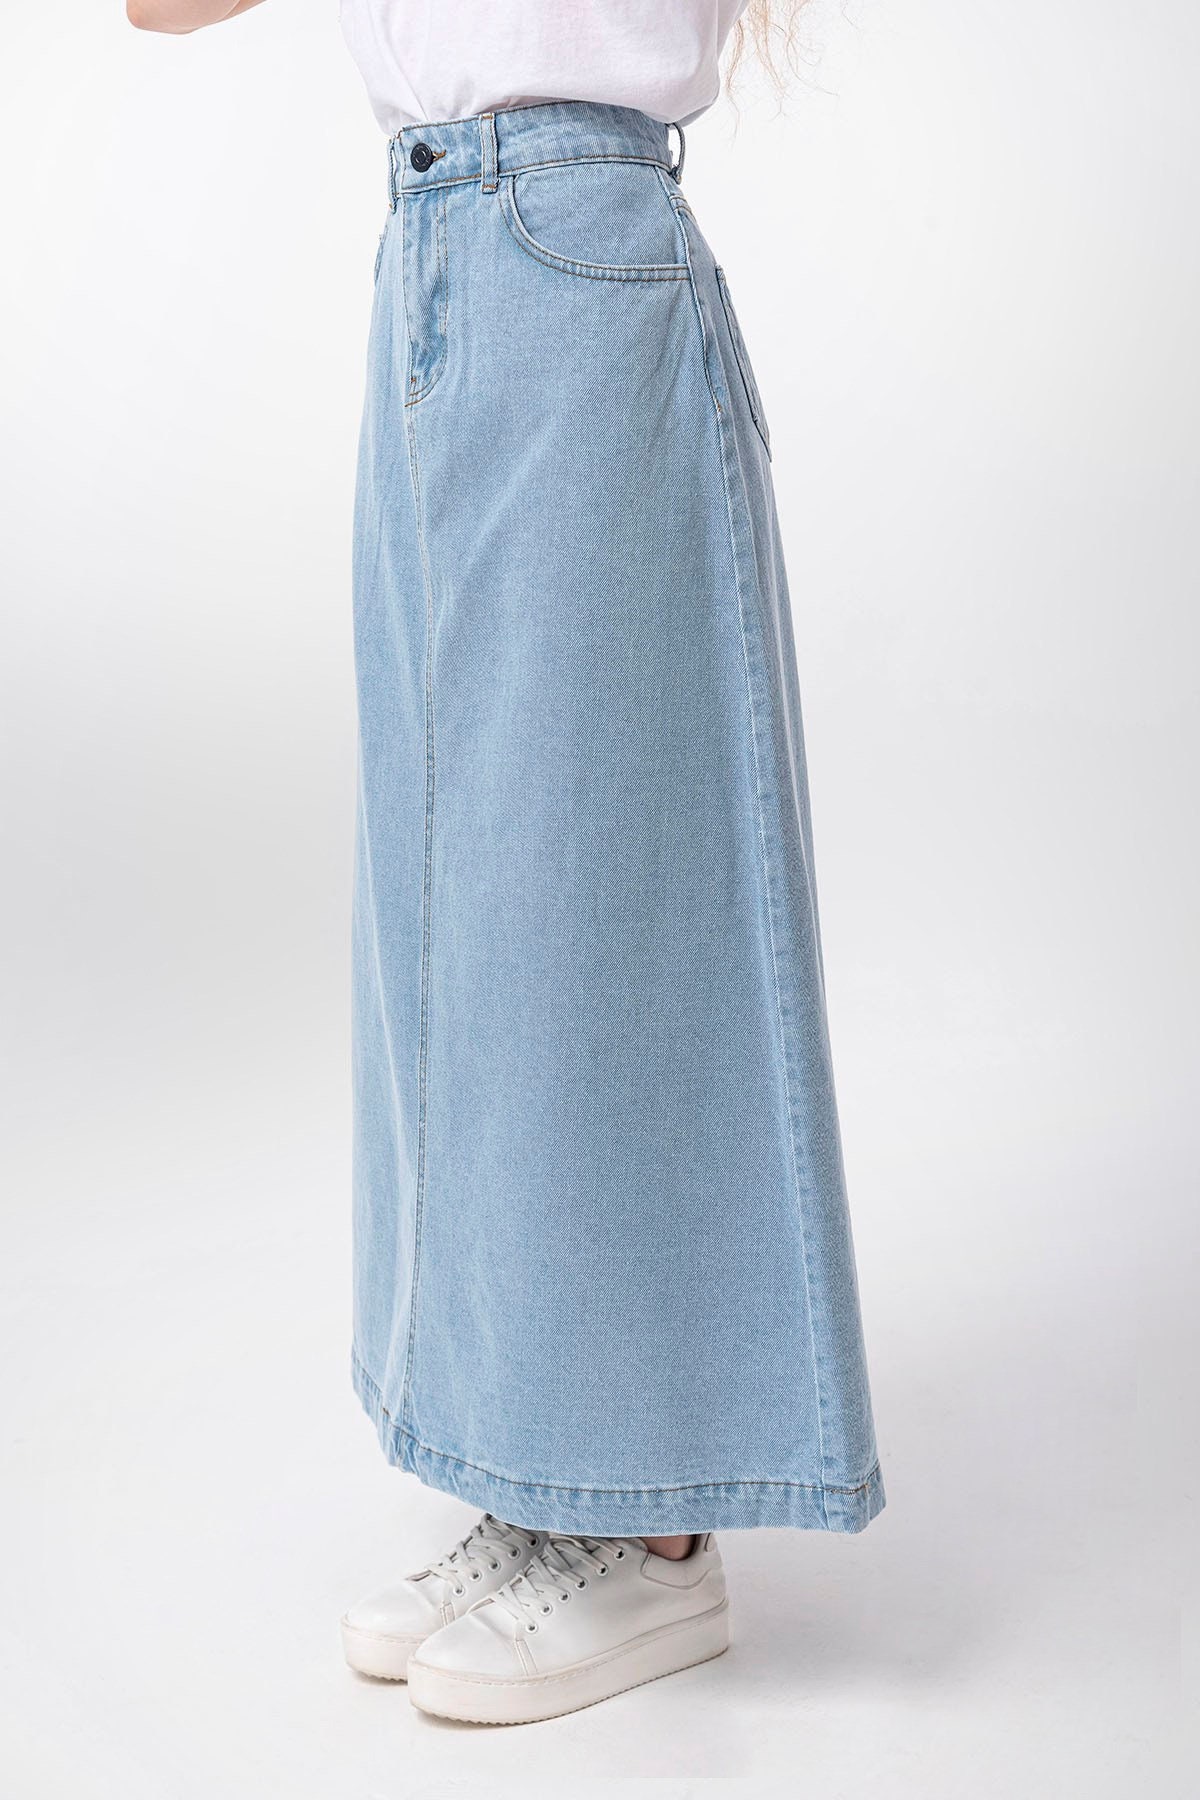 Campine Ice Blue Denim Maxi Skirt Long Soft Full Length Modest - Etsy